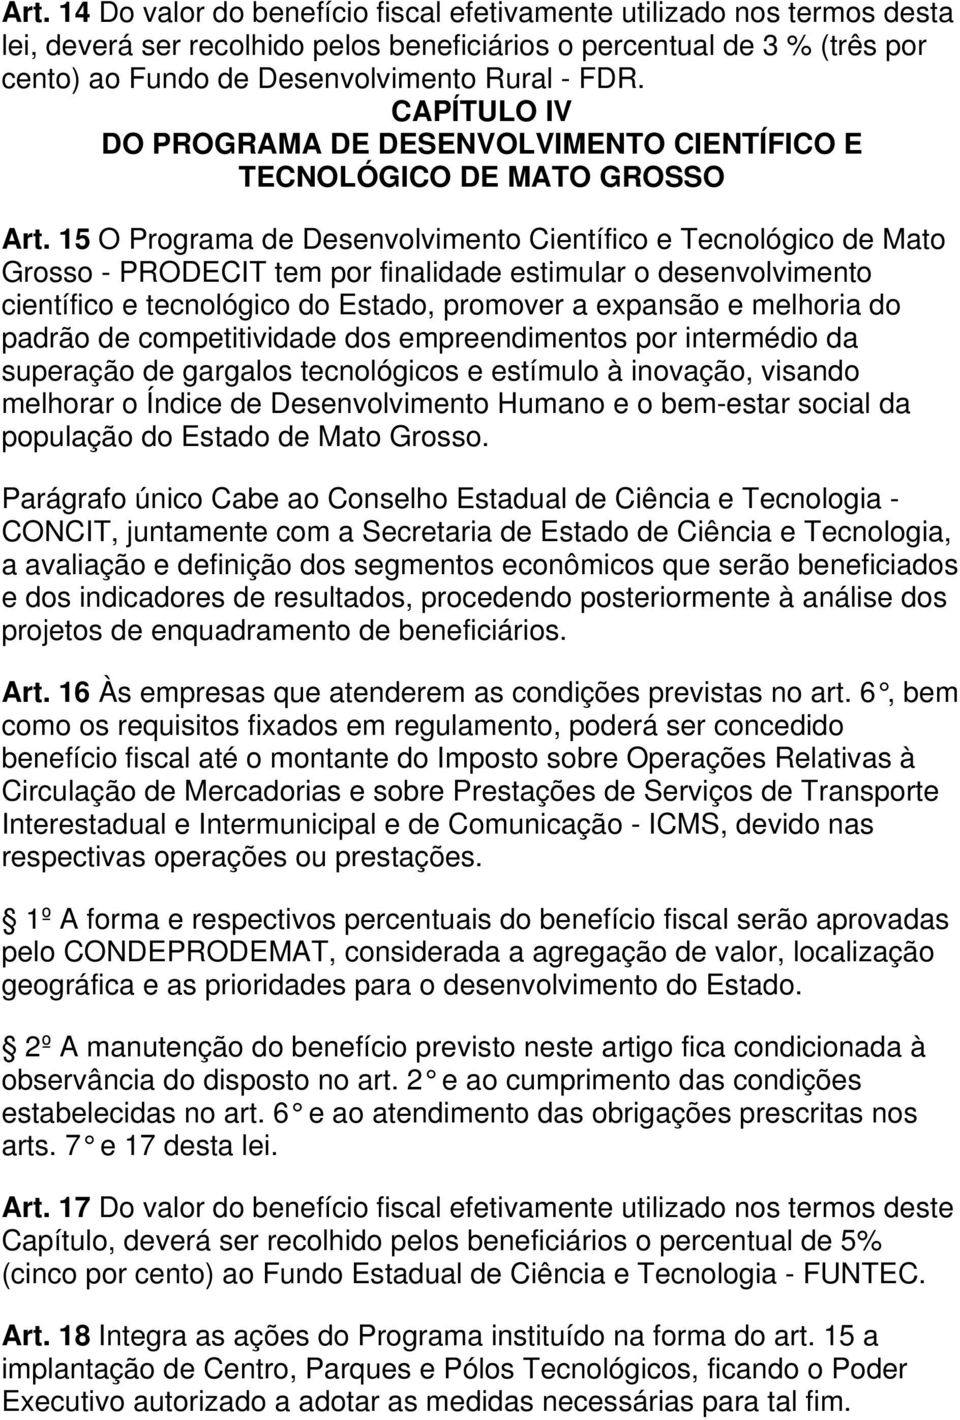 15 O Programa de Desenvolvimento Científico e Tecnológico de Mato Grosso - PRODECIT tem por finalidade estimular o desenvolvimento científico e tecnológico do Estado, promover a expansão e melhoria